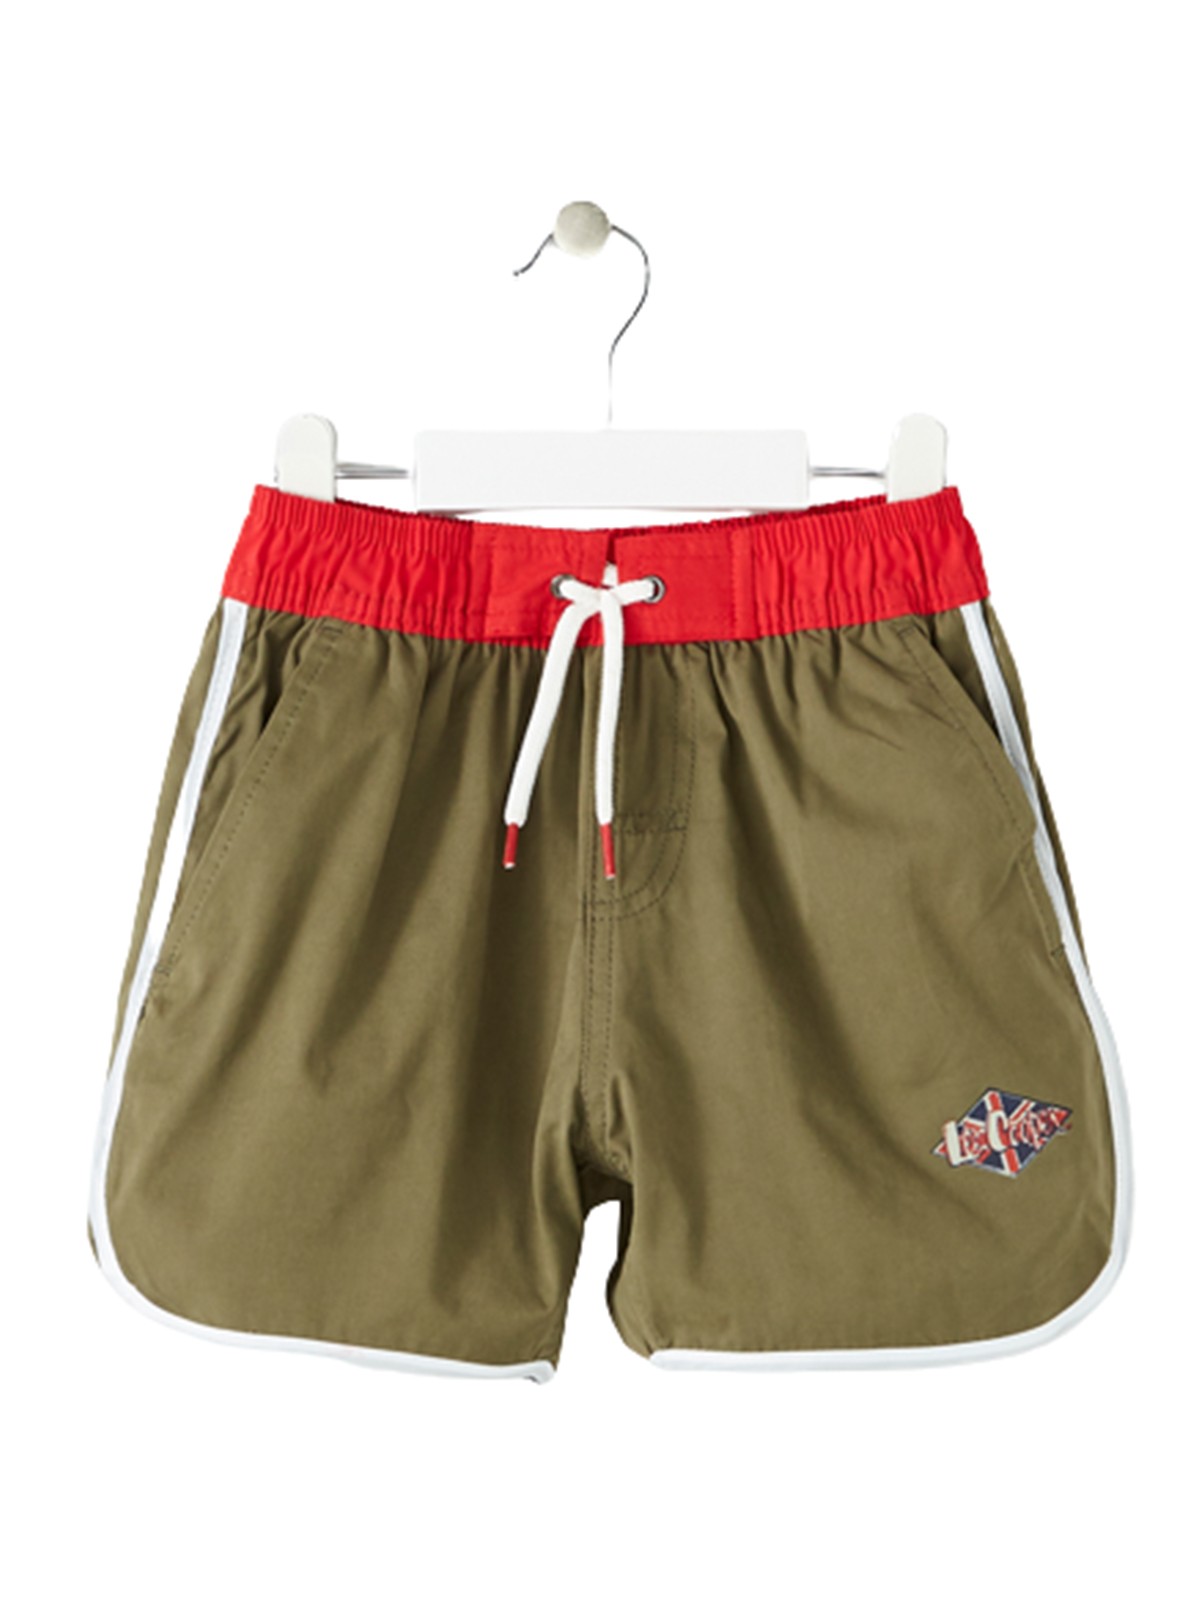 Lee Cooper short shorts